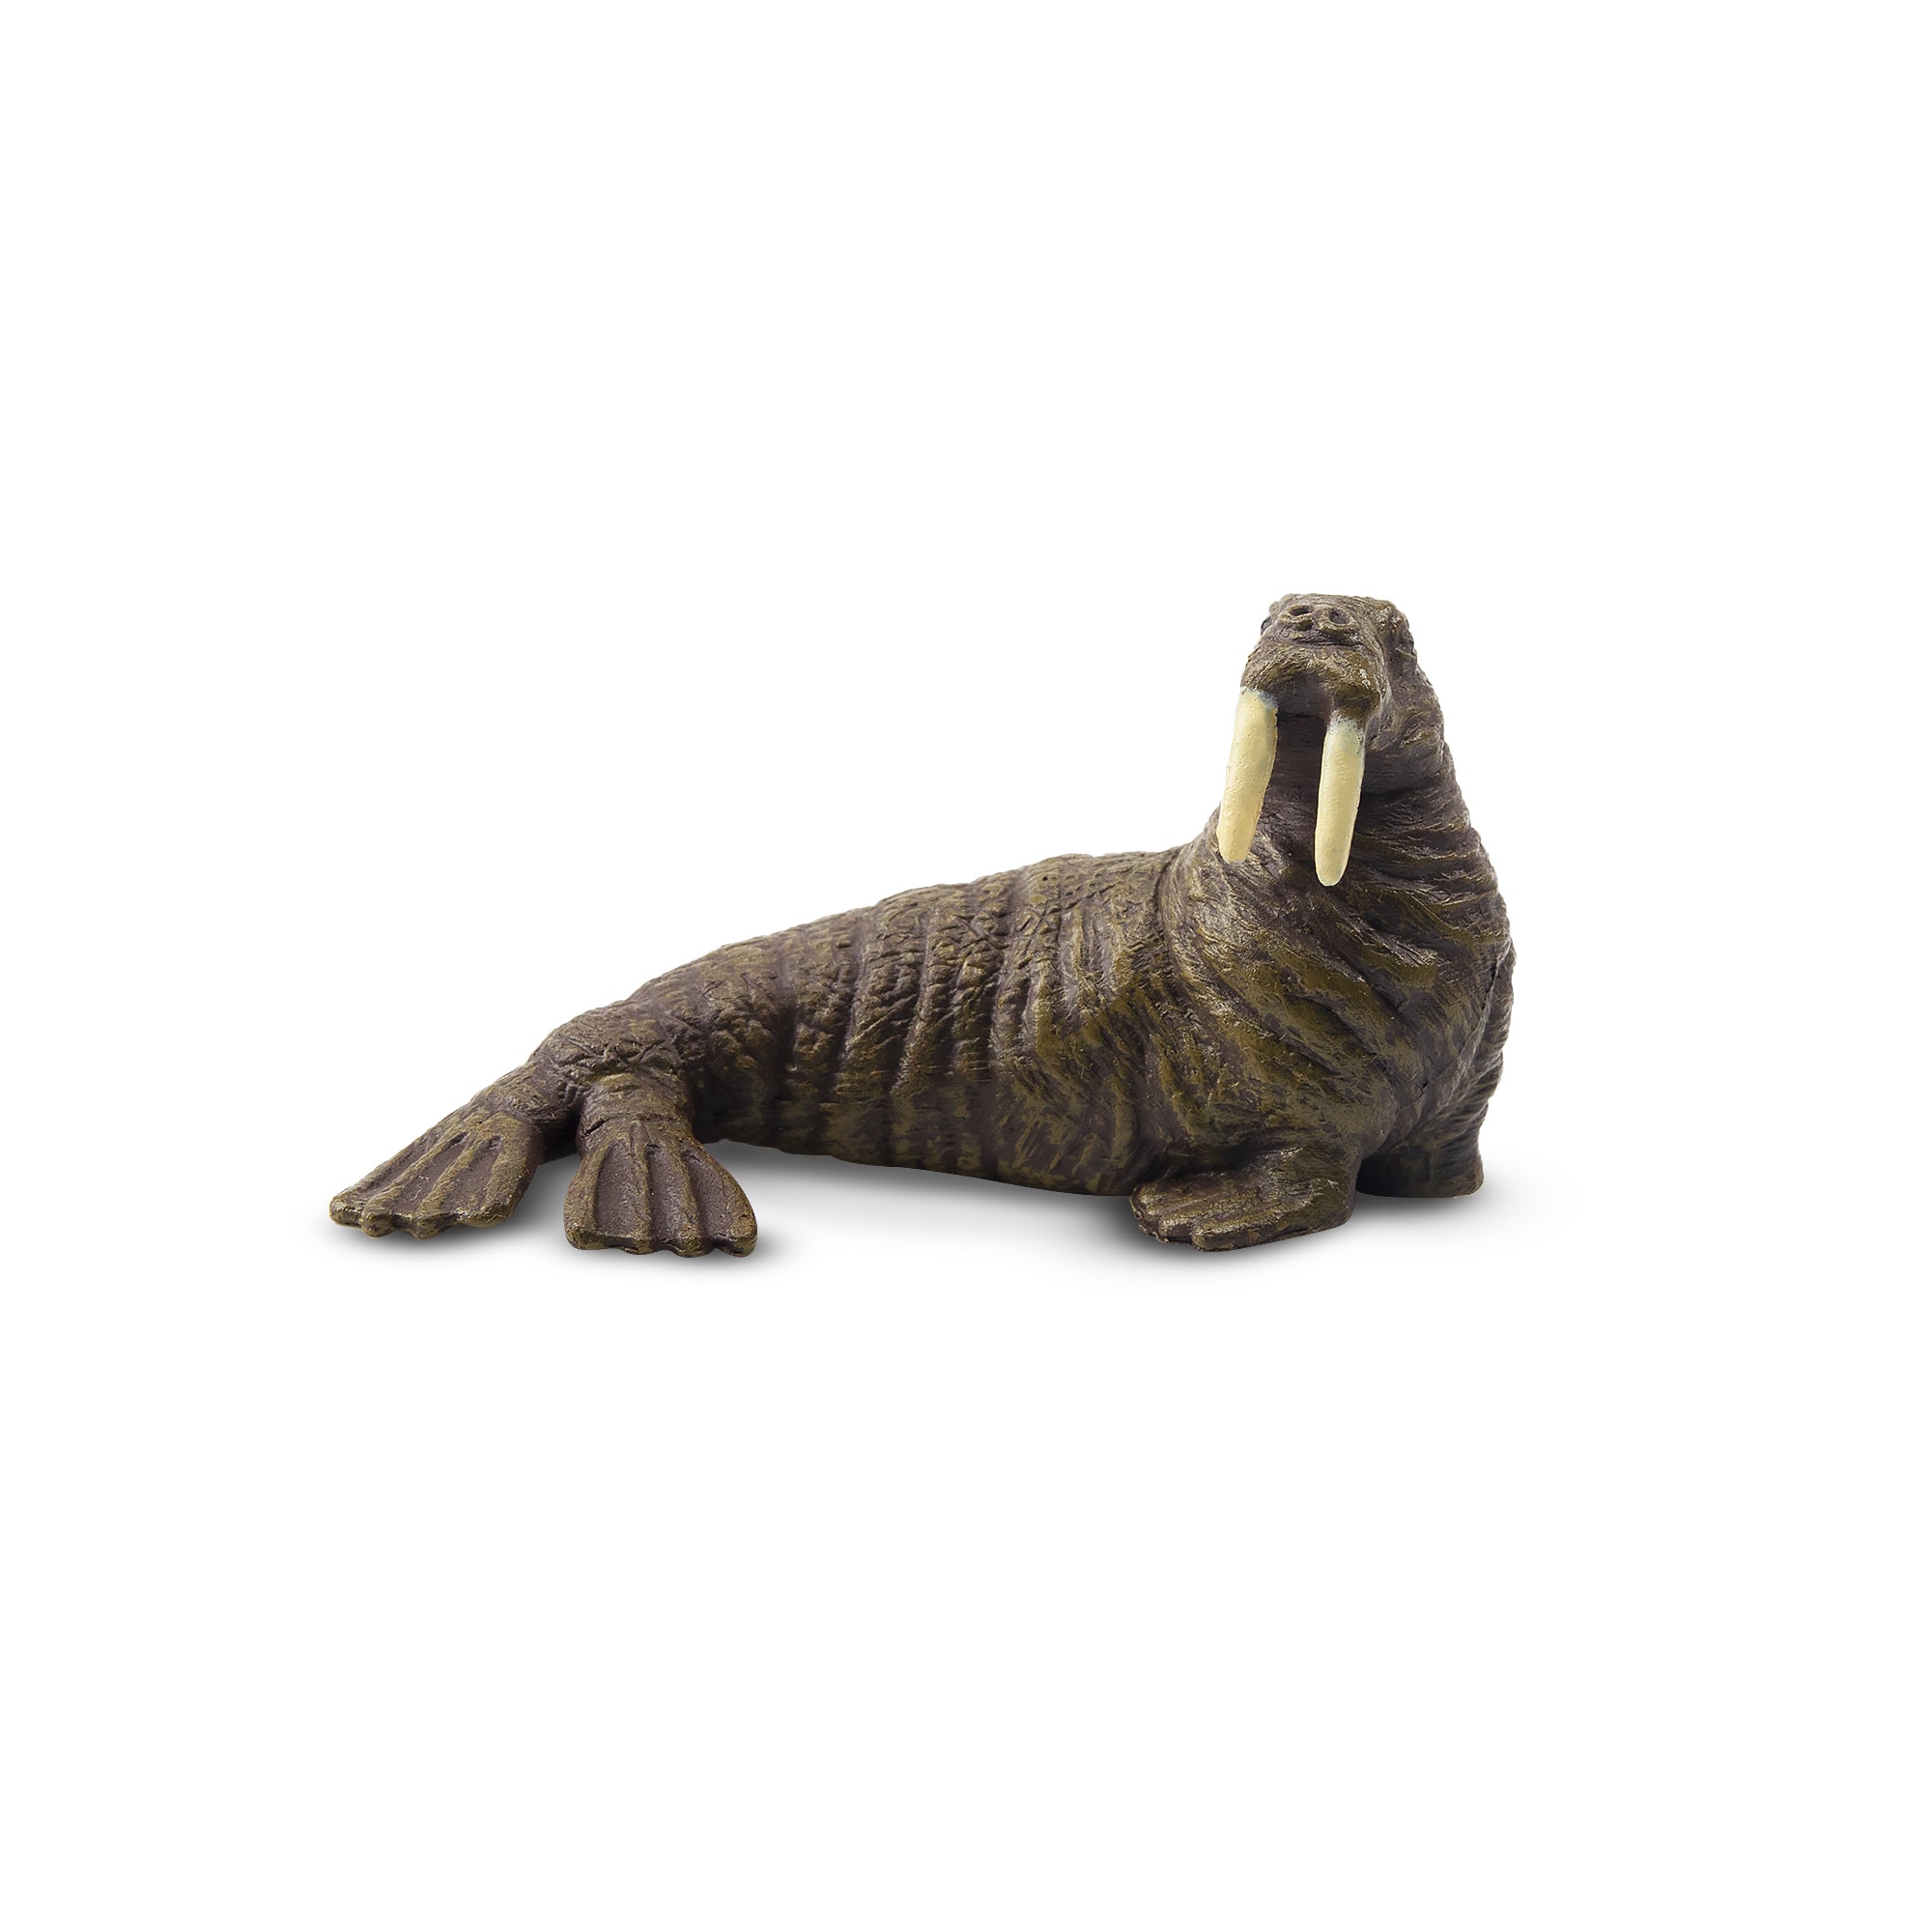 Toymany Arctic Walrus Figurine Toy